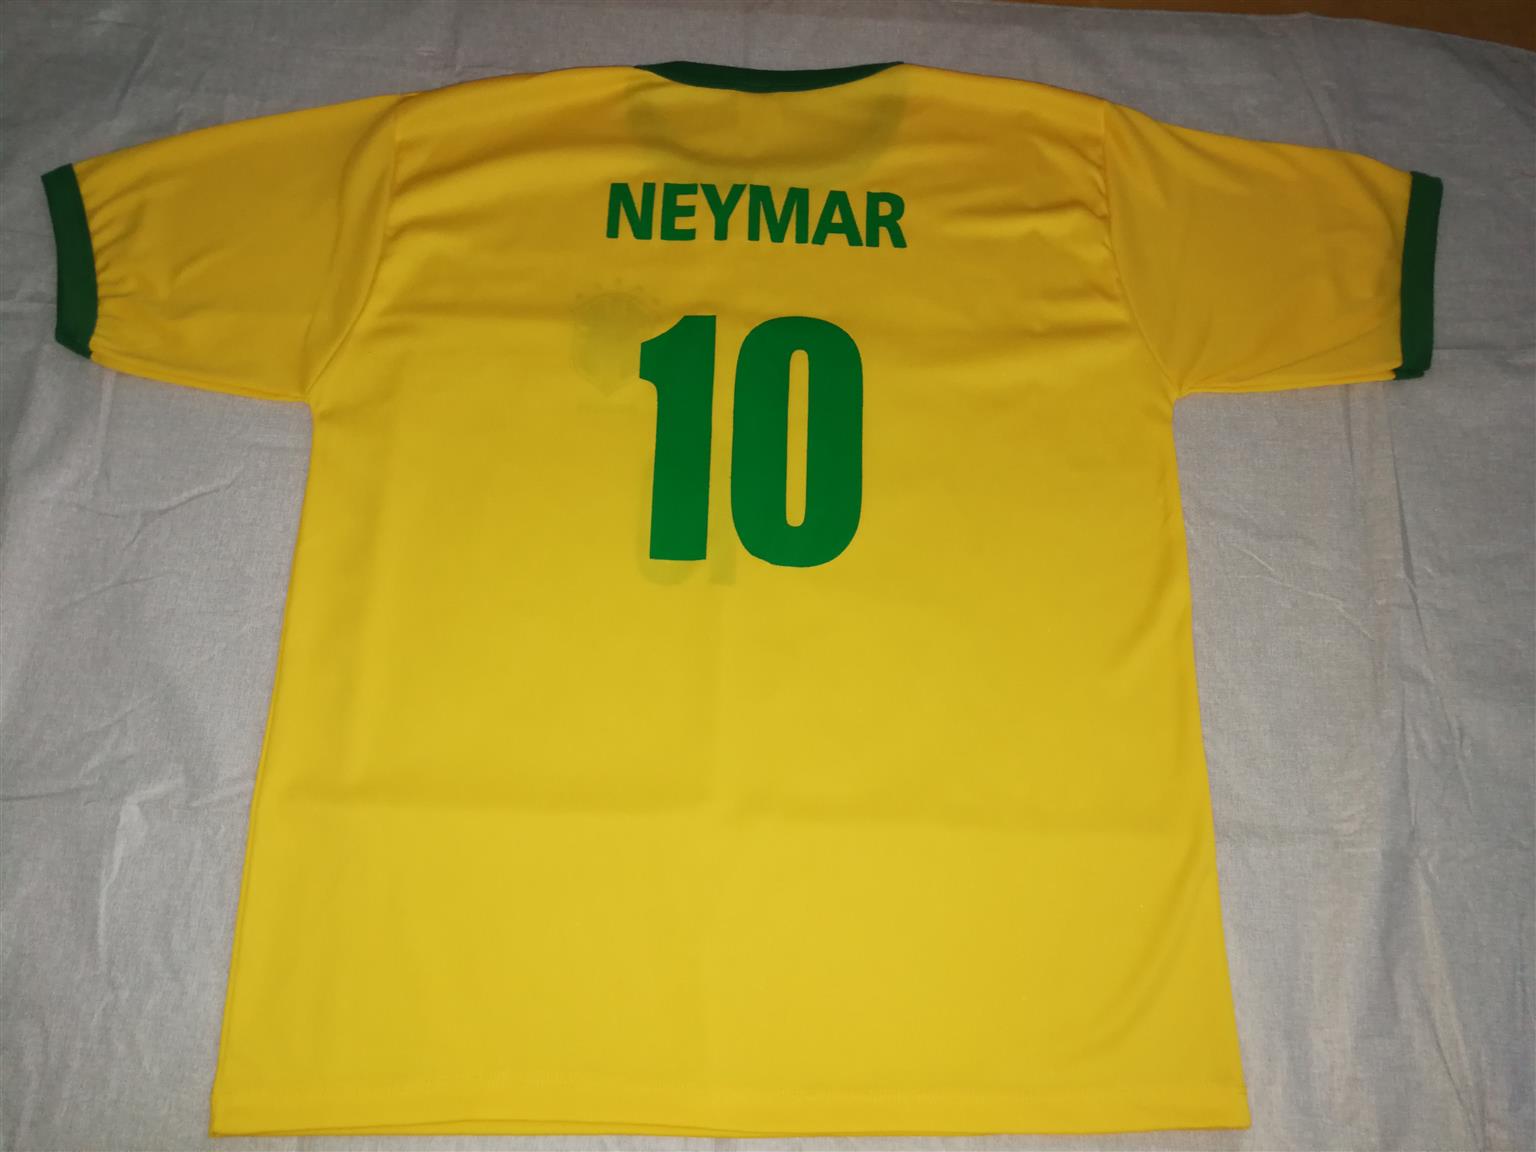 Neymar Brazil Football Shirt with Cap